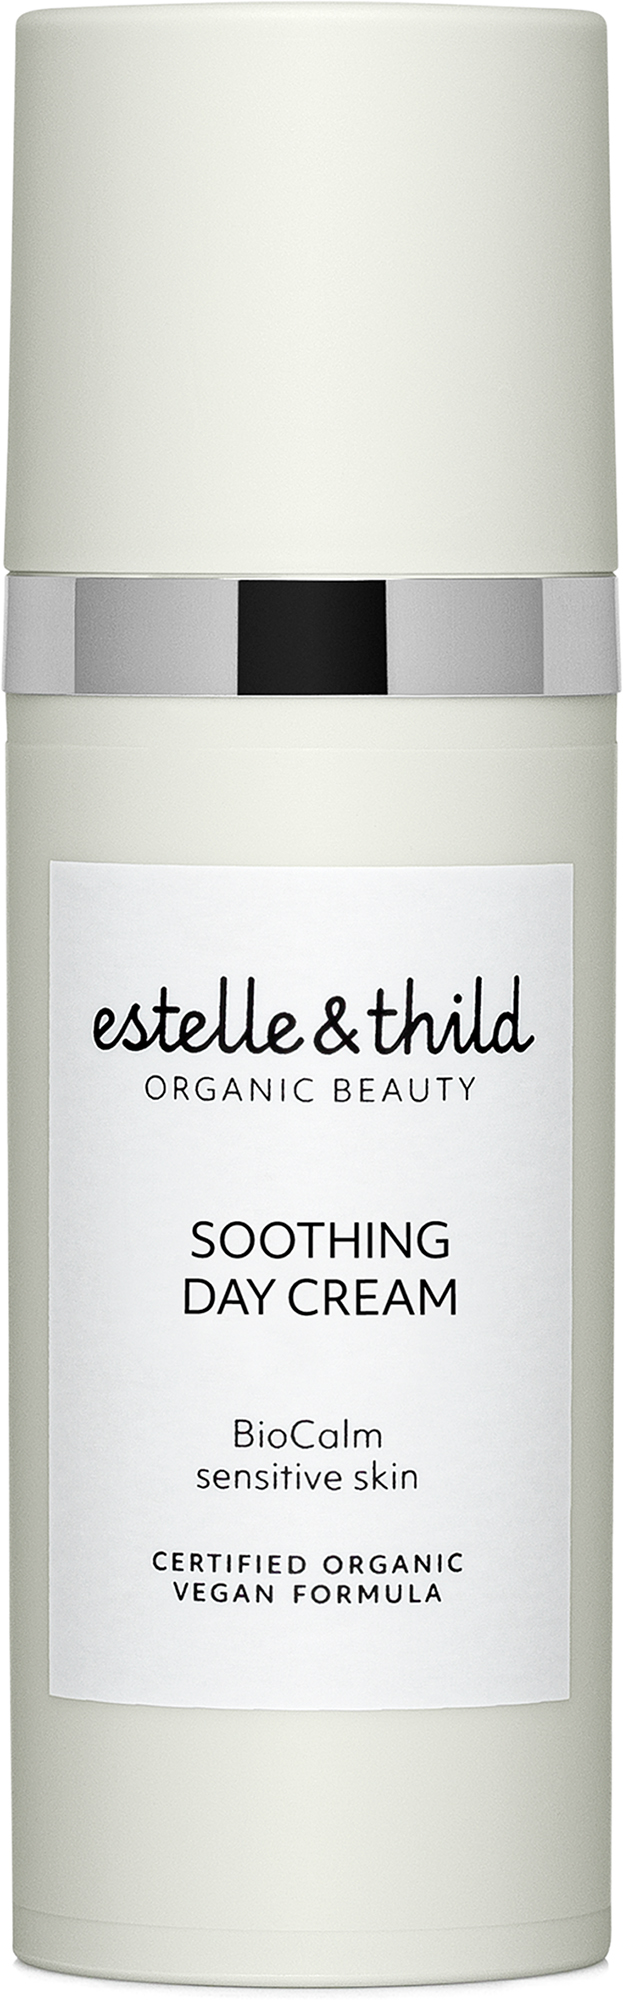 Estelle & Thild BioCalm Soothing Moisture Day Cream